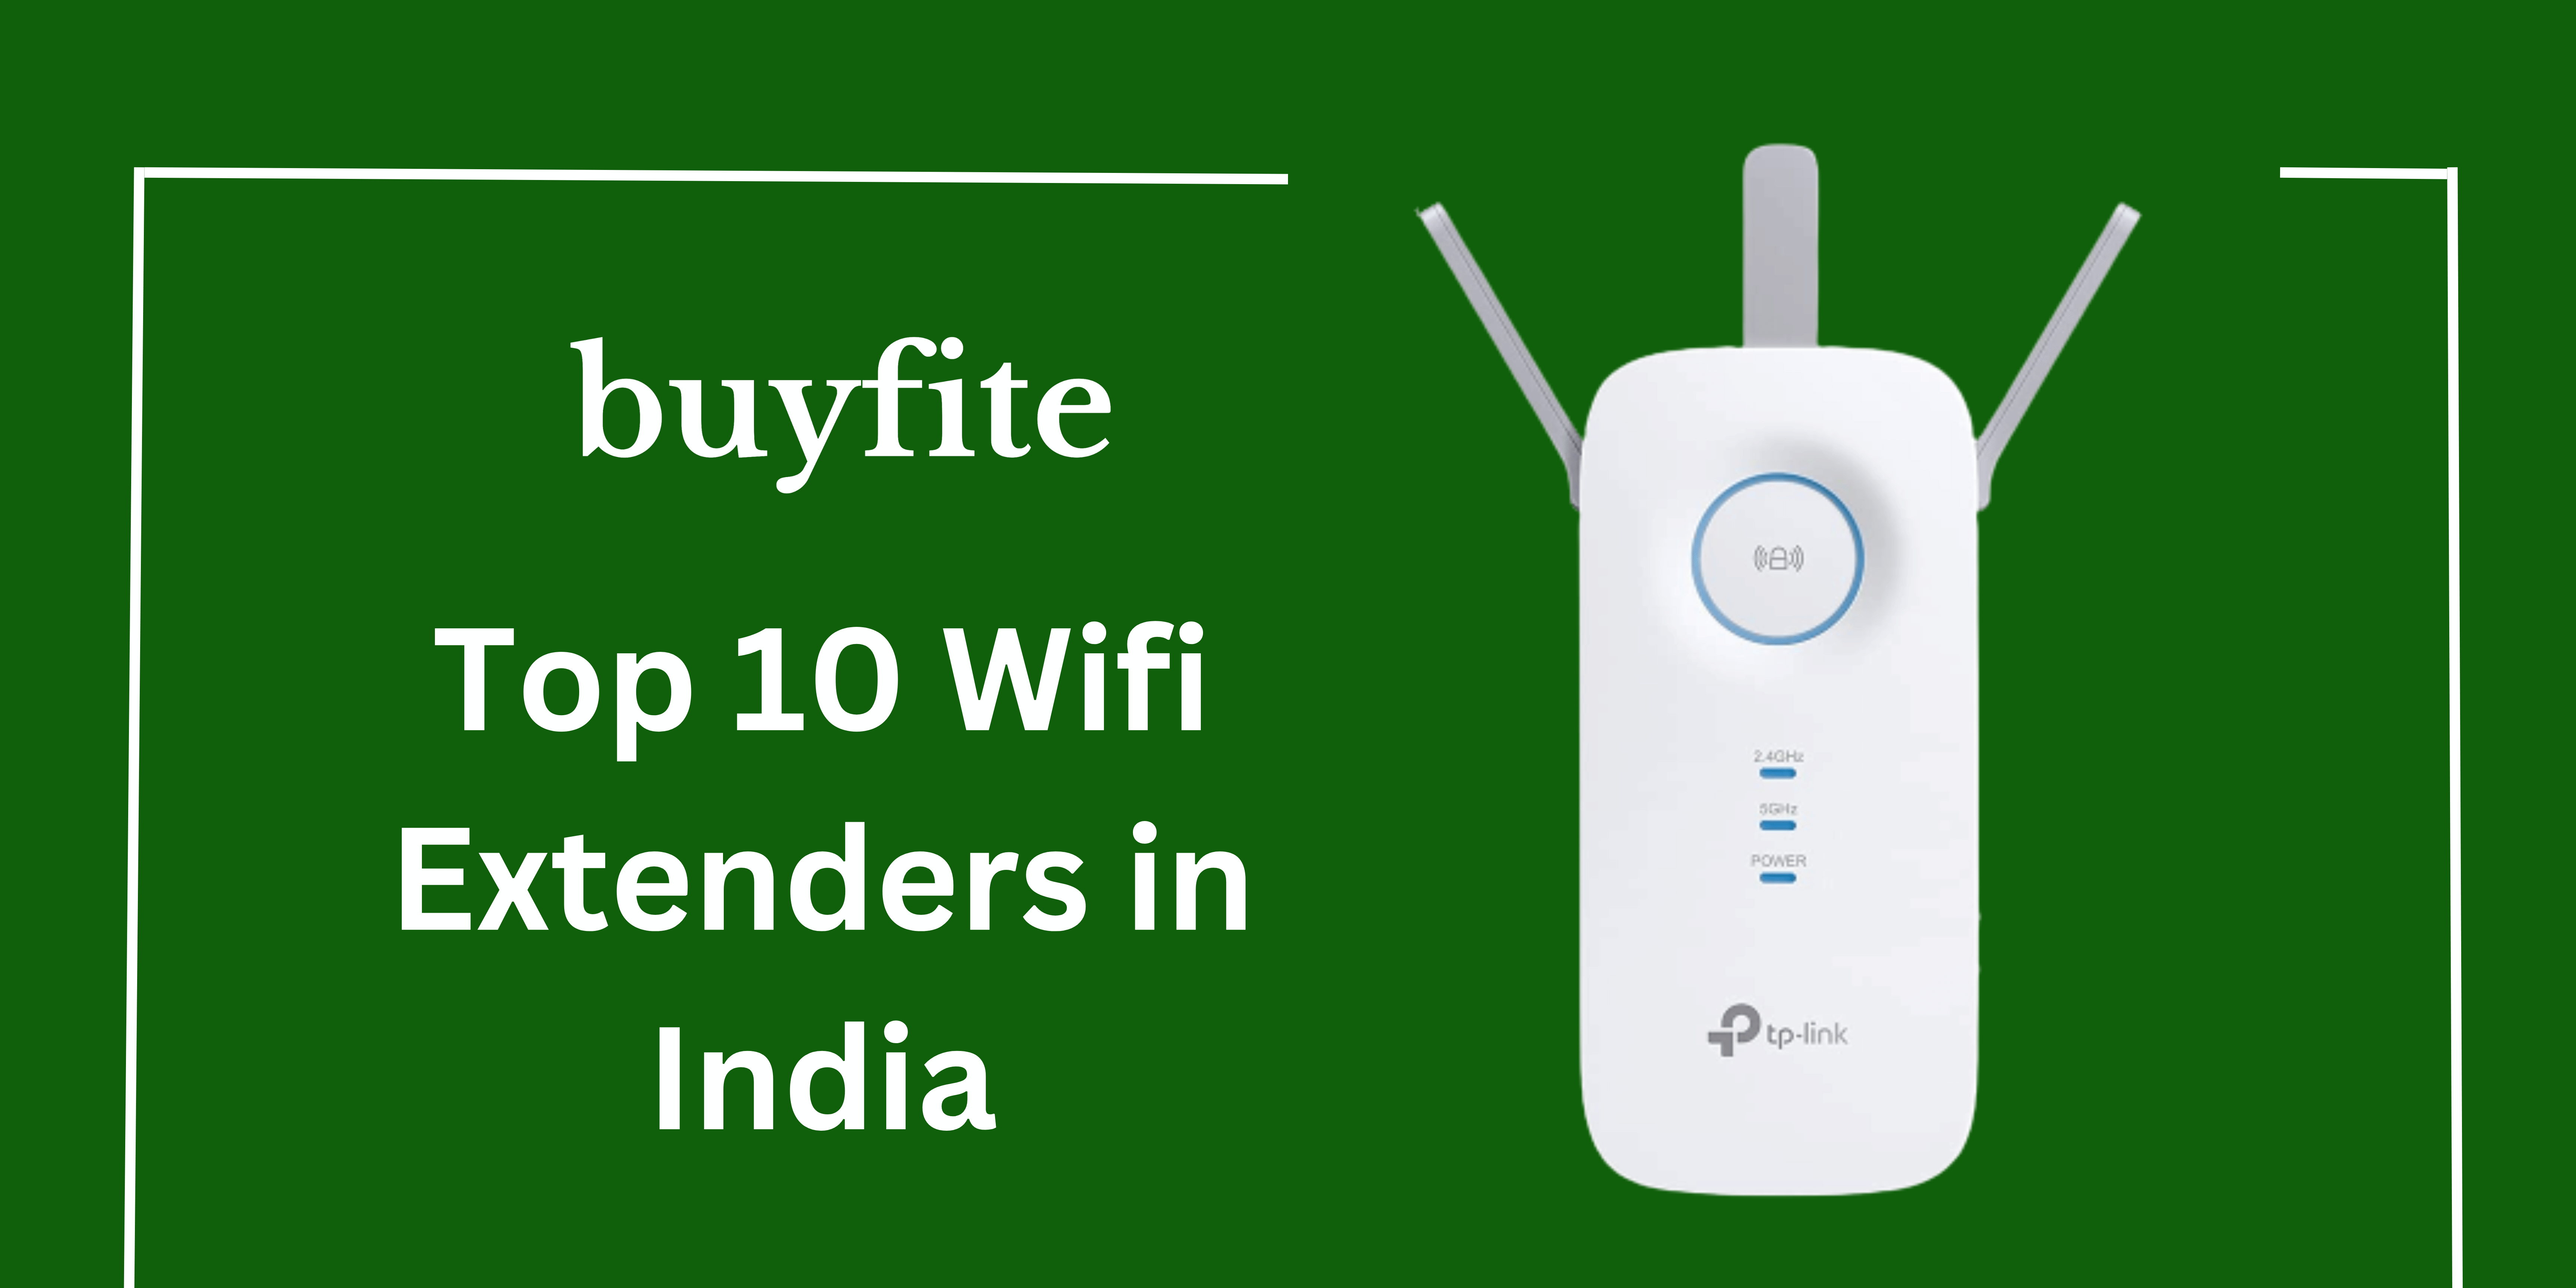 Top 10 Wifi Extenders in India - buyfite